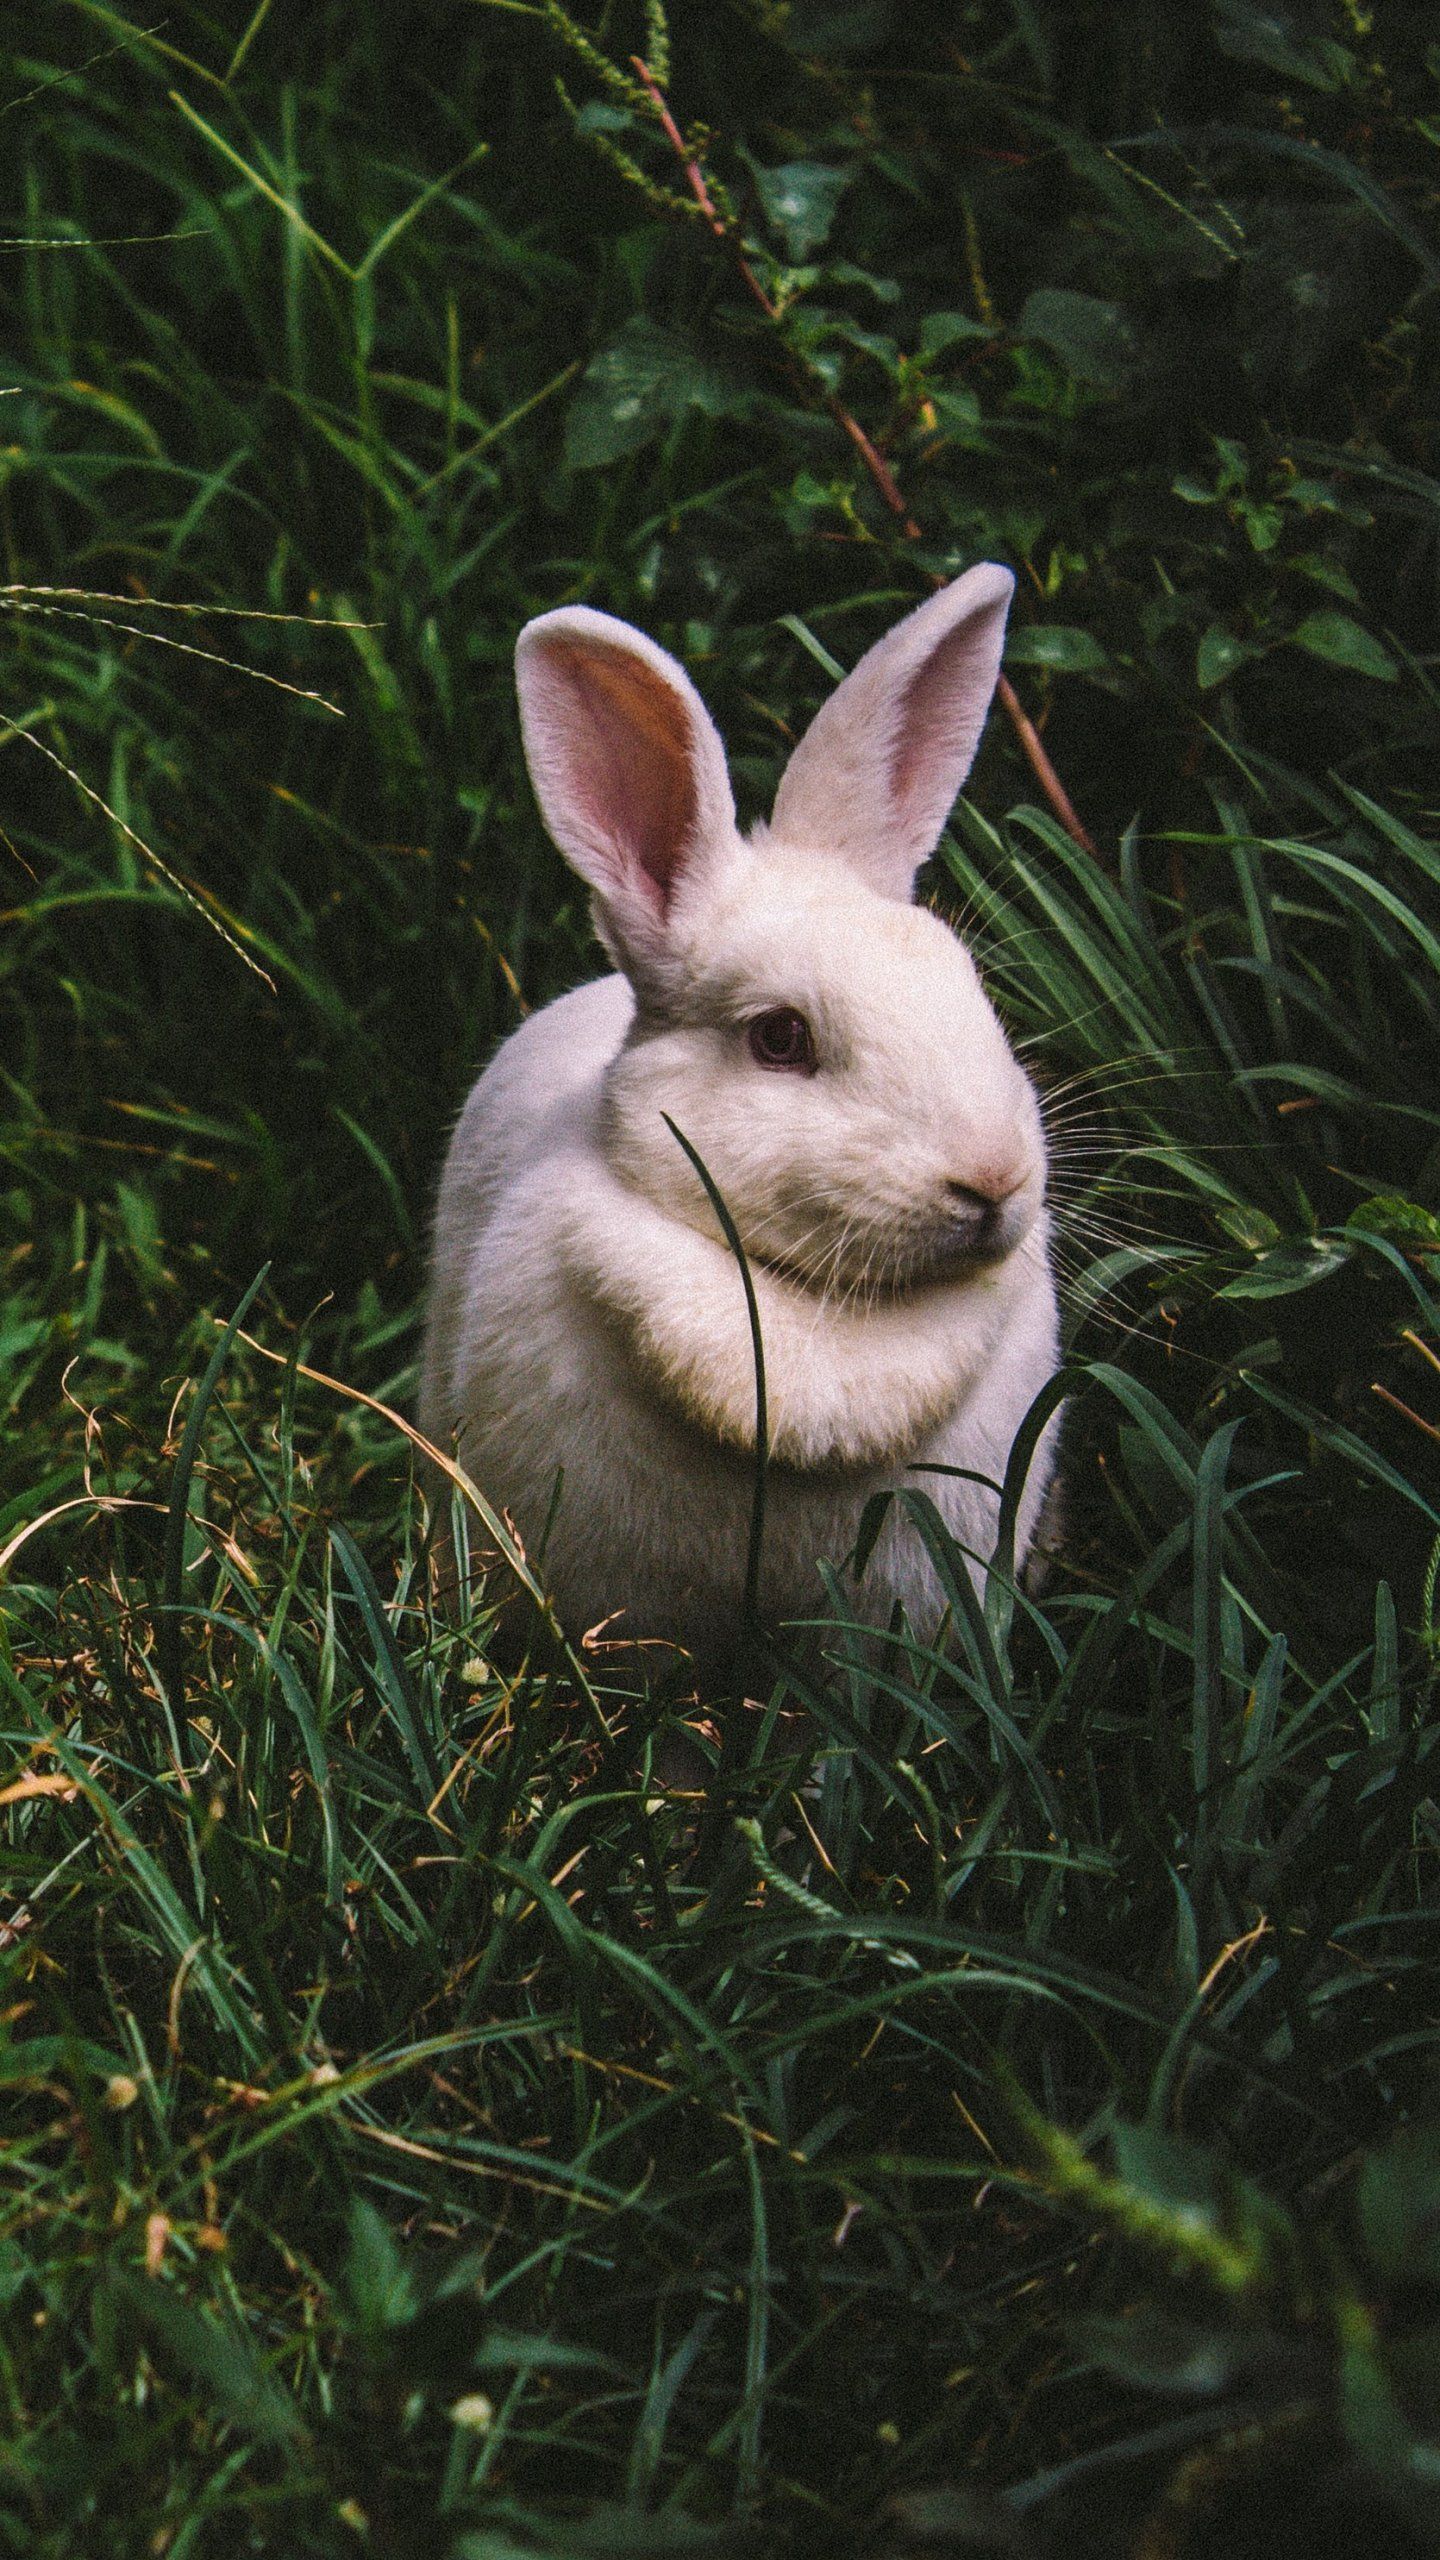 White Rabbit Wallpaper, Android & Desktop Background. Rabbit wallpaper, Animals, Wildlife wallpaper